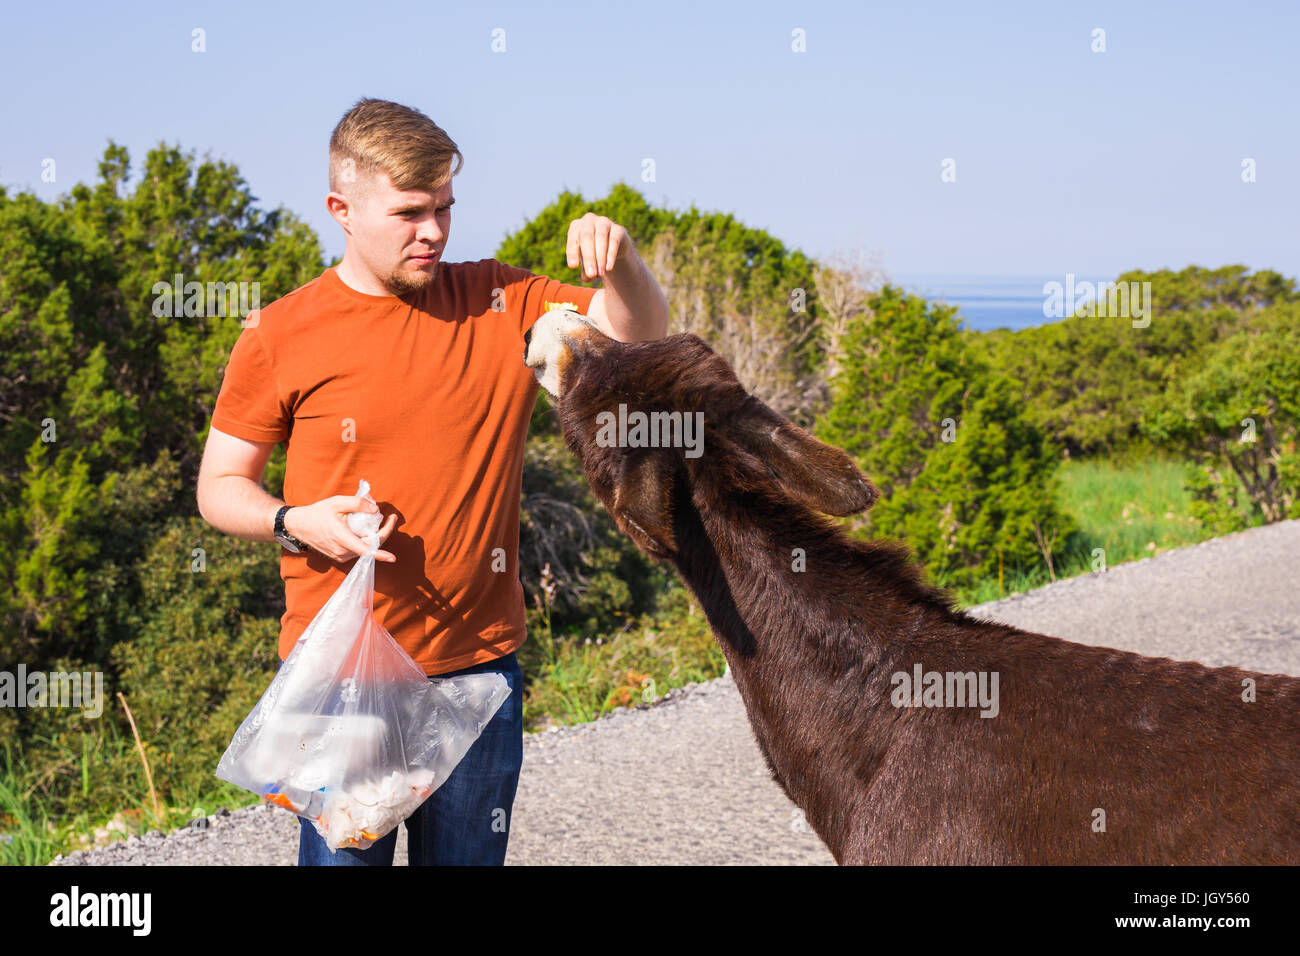 Jeune homme à l'alimentation et l'âne sauvage, de Chypre, de l'âne sauvage du Parc National Karpaz Zone de protection. Banque D'Images